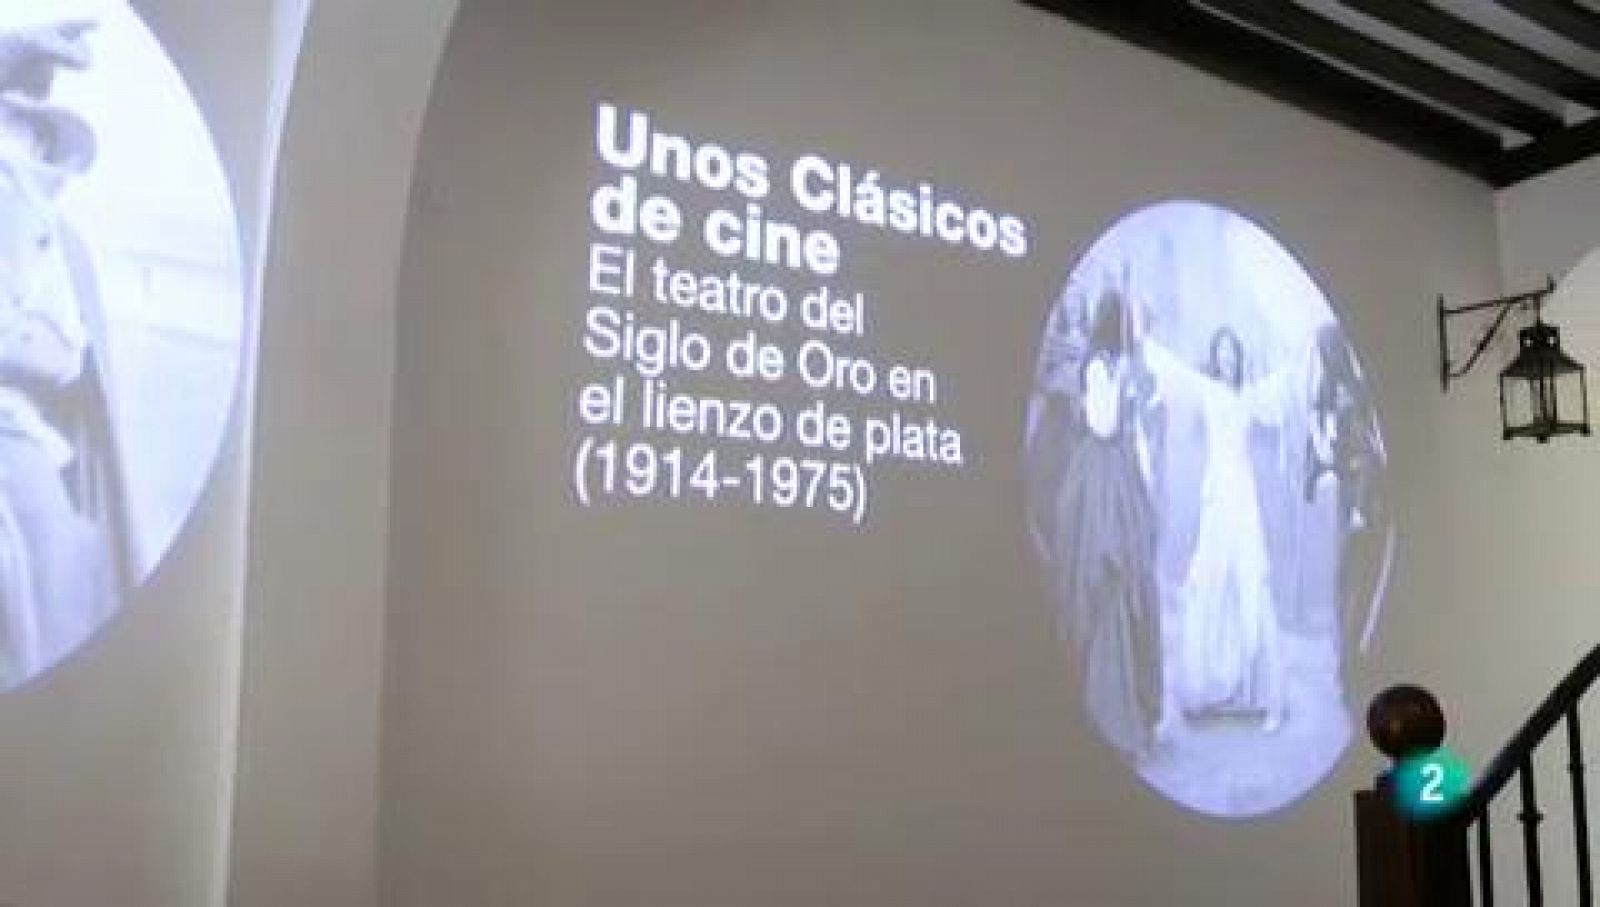 La aventura del saber - Casa Museo de Lope: Unos clásicos... ¡de cine!